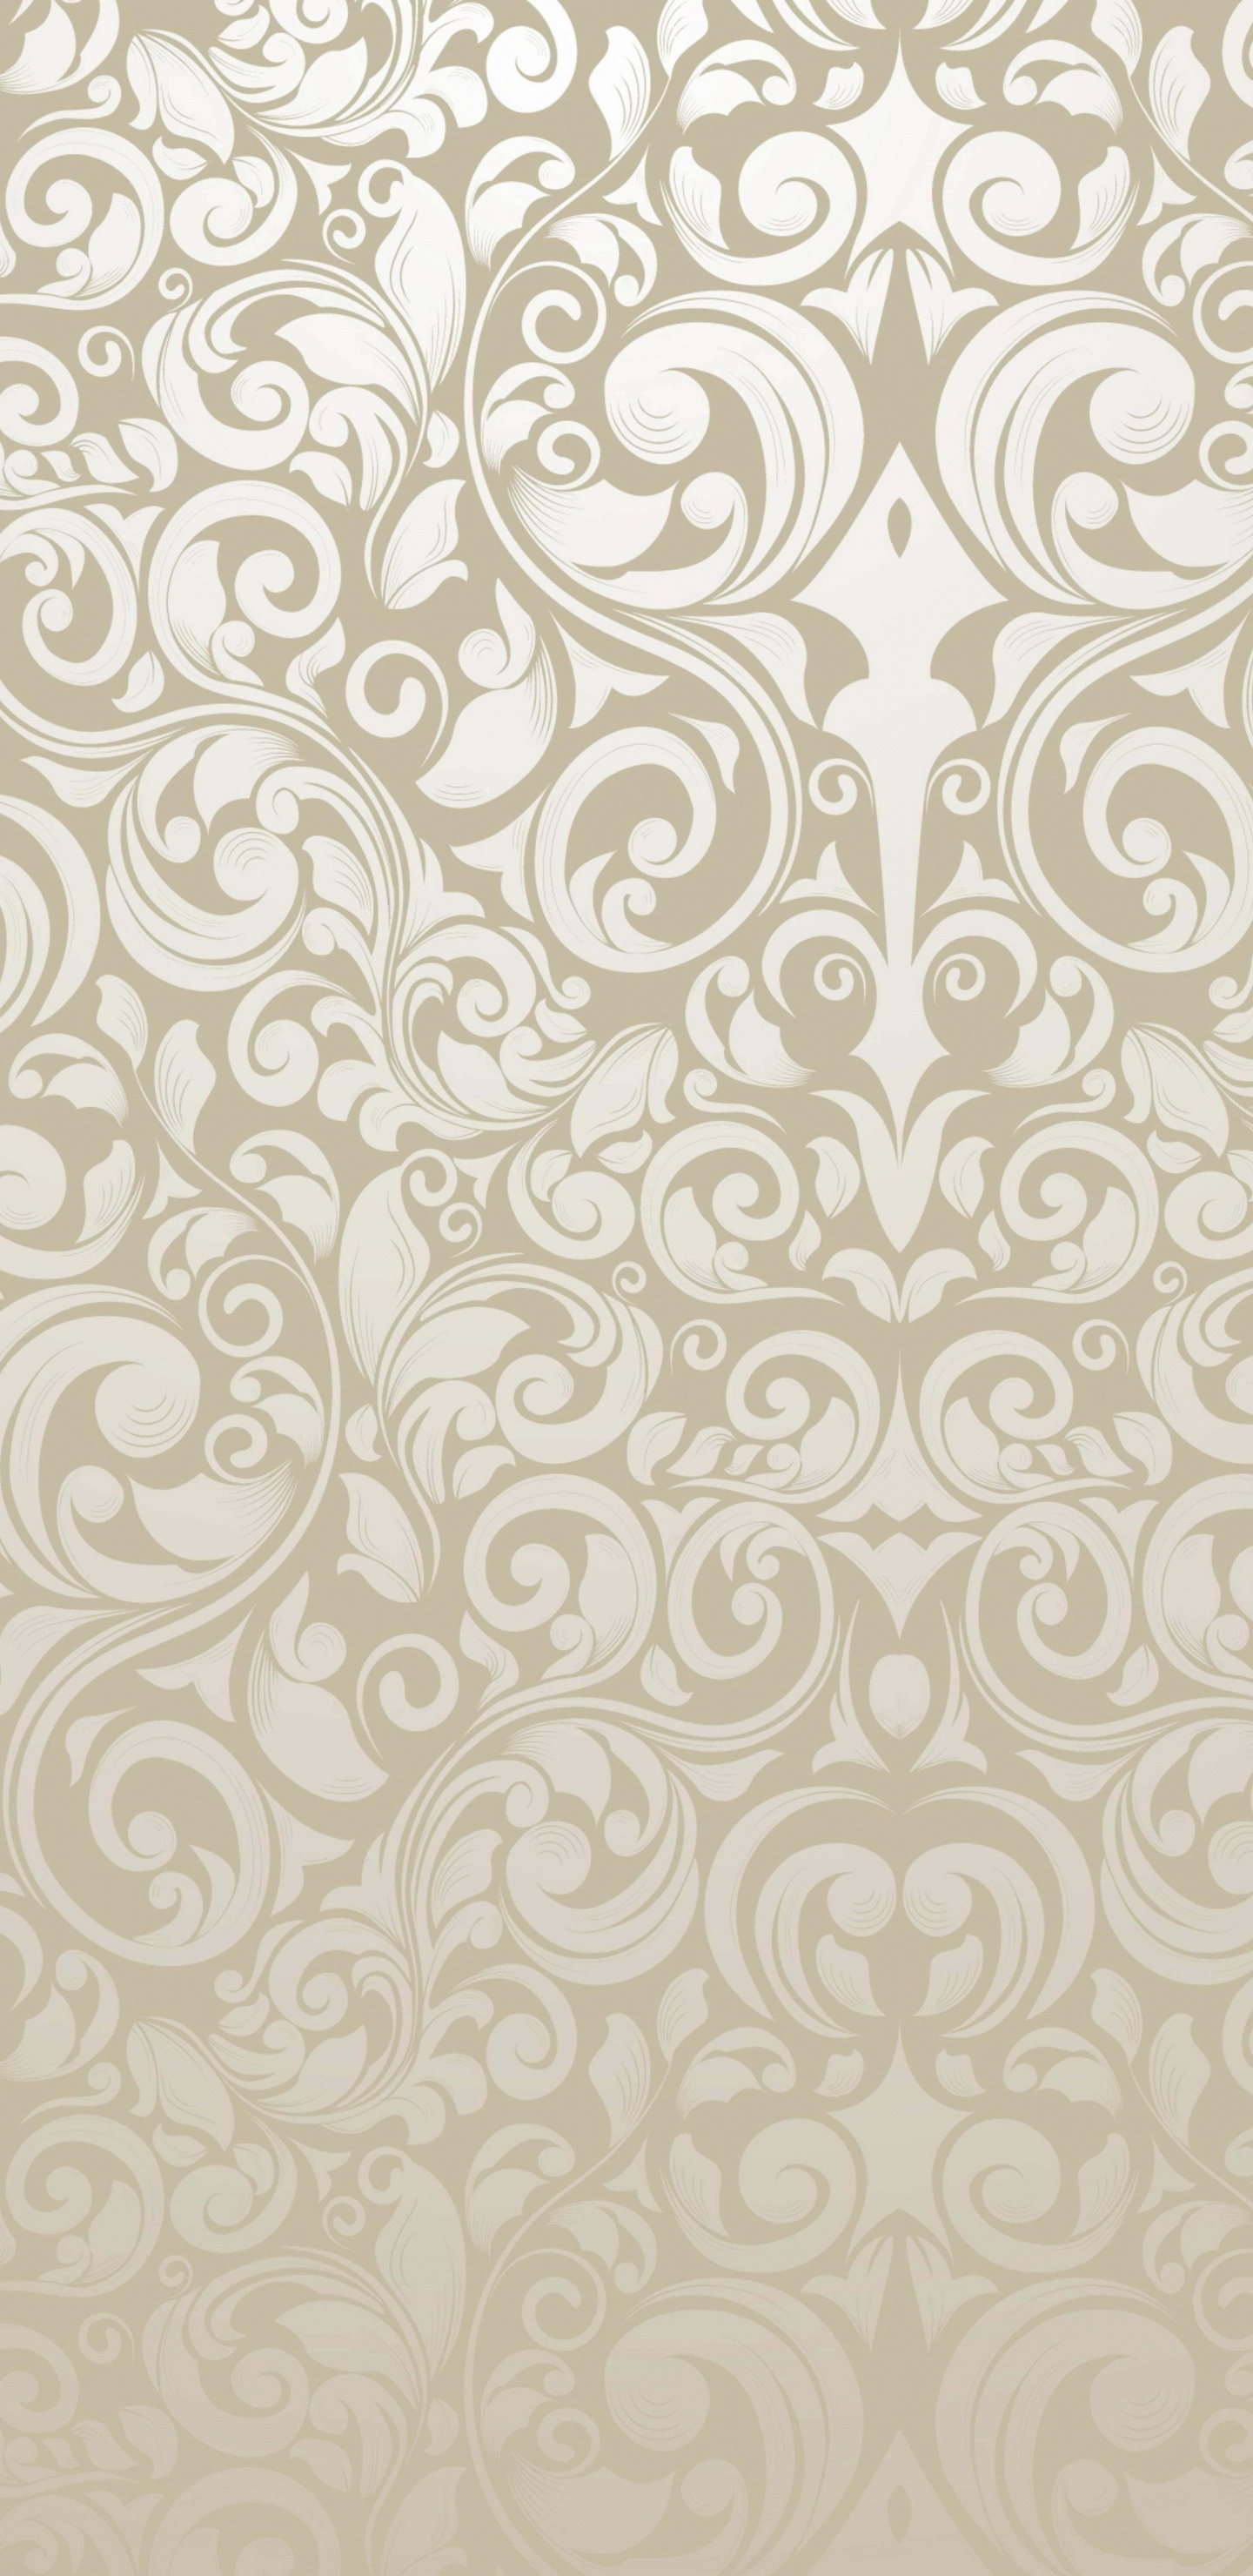 Textile Floral Blanc et Noir. Wallpaper in 1440x2960 Resolution